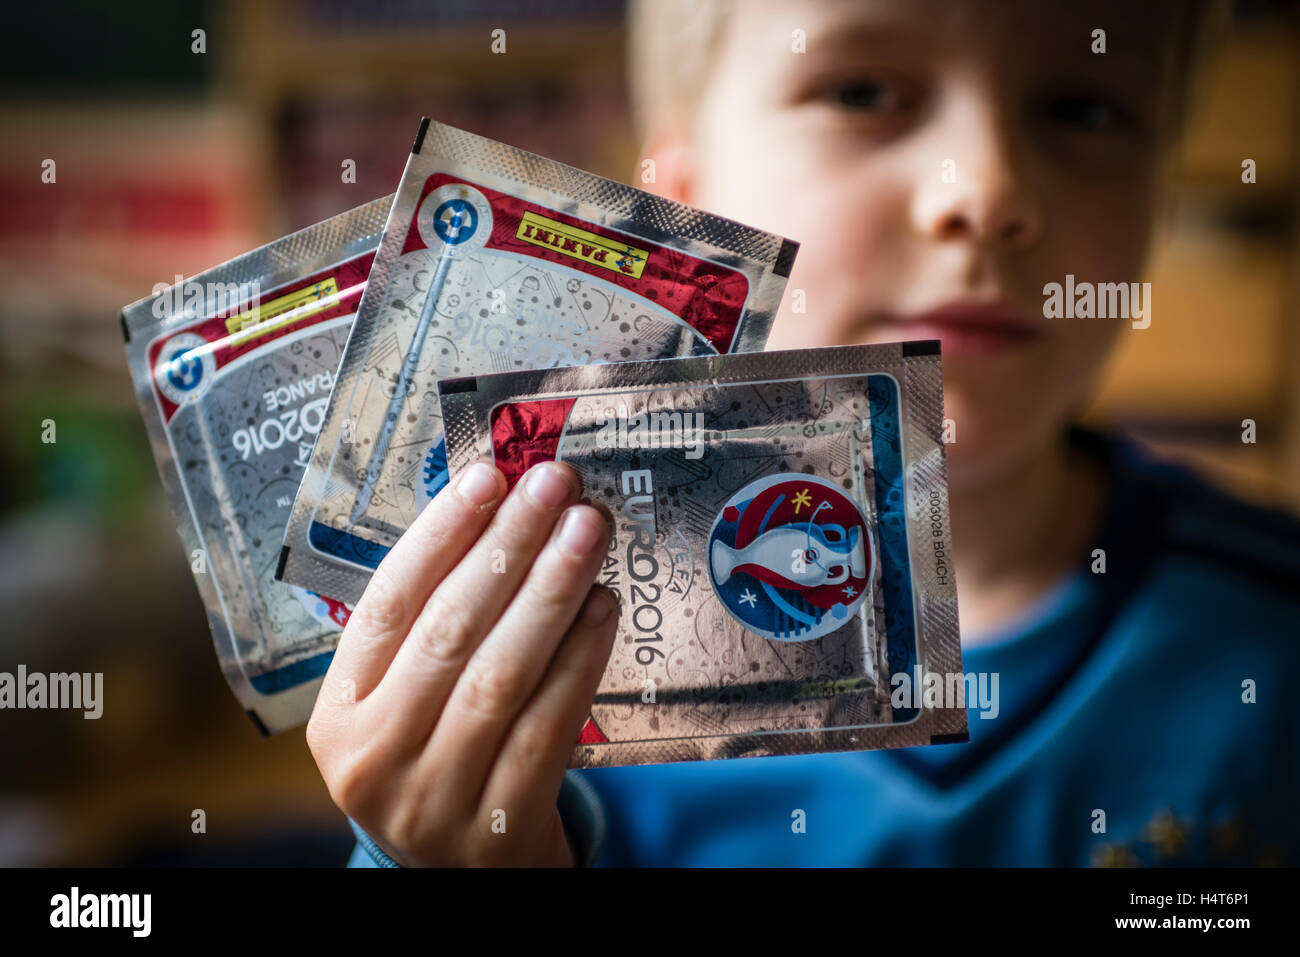 Ein 8 Jahre alter Junge zeigt seine Packung von Panini Fußball-Sammelkarten für die EURO 2016 UEFA Fußball Europameisterschaft. Stockfoto